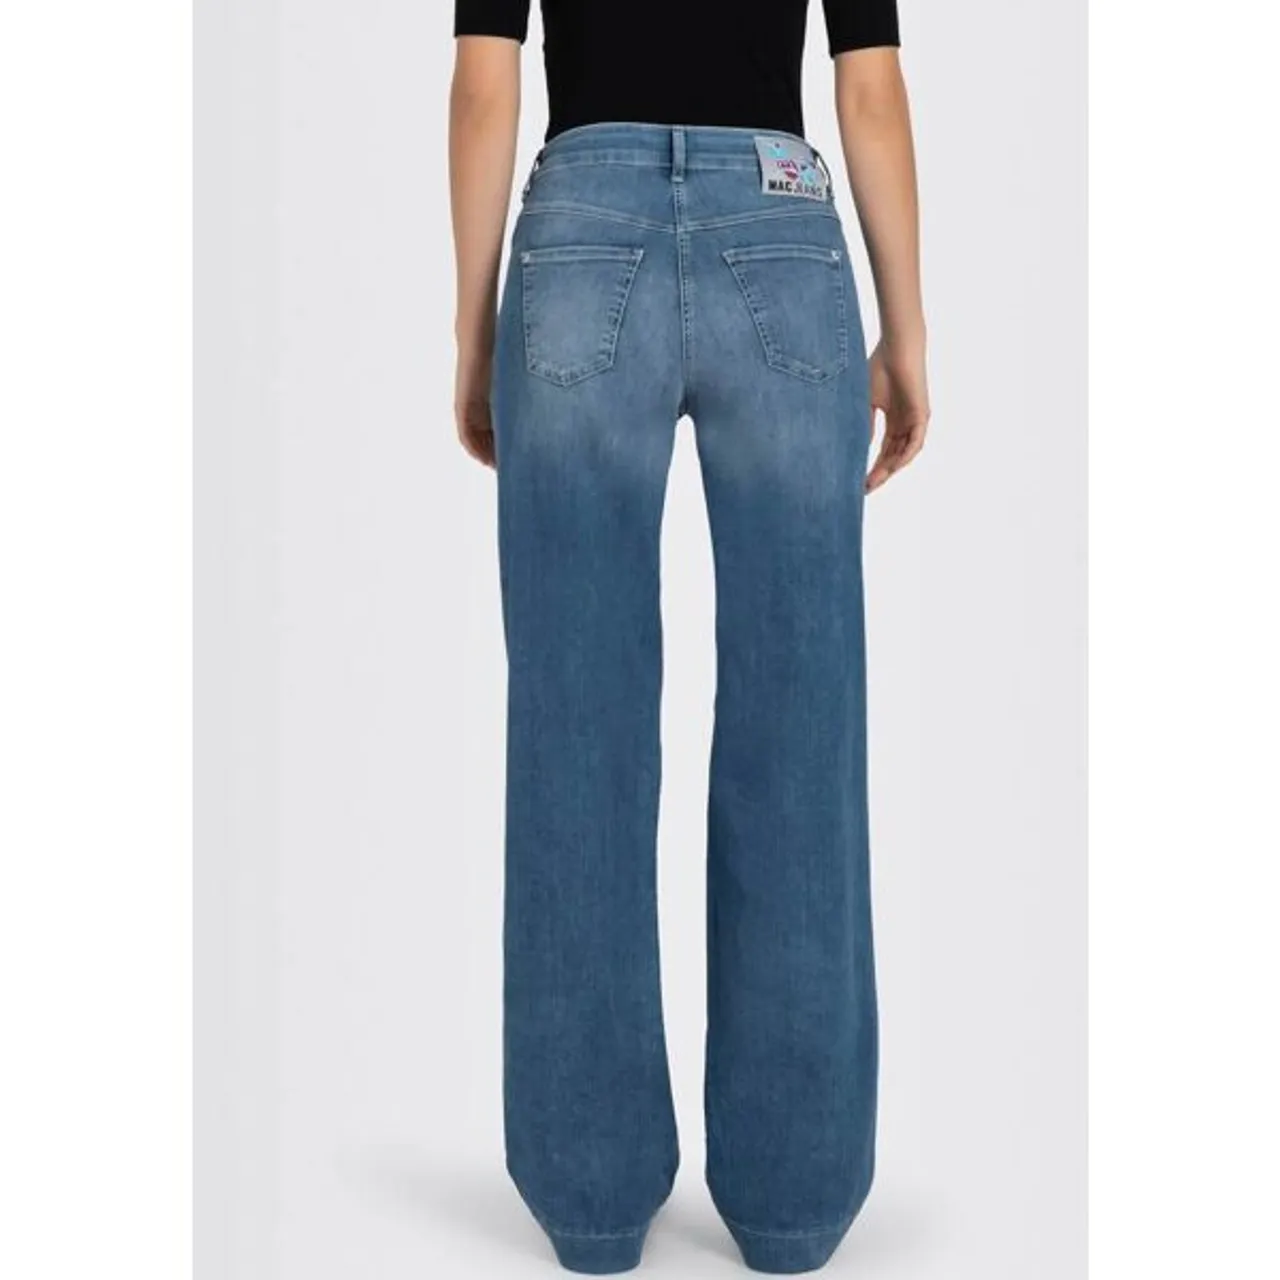 Weite Jeans MAC "DREAM WIDE" Gr. 36, Länge 32, blau (summermidblue) Damen Jeans Weite mit weitem Bein - Stretch